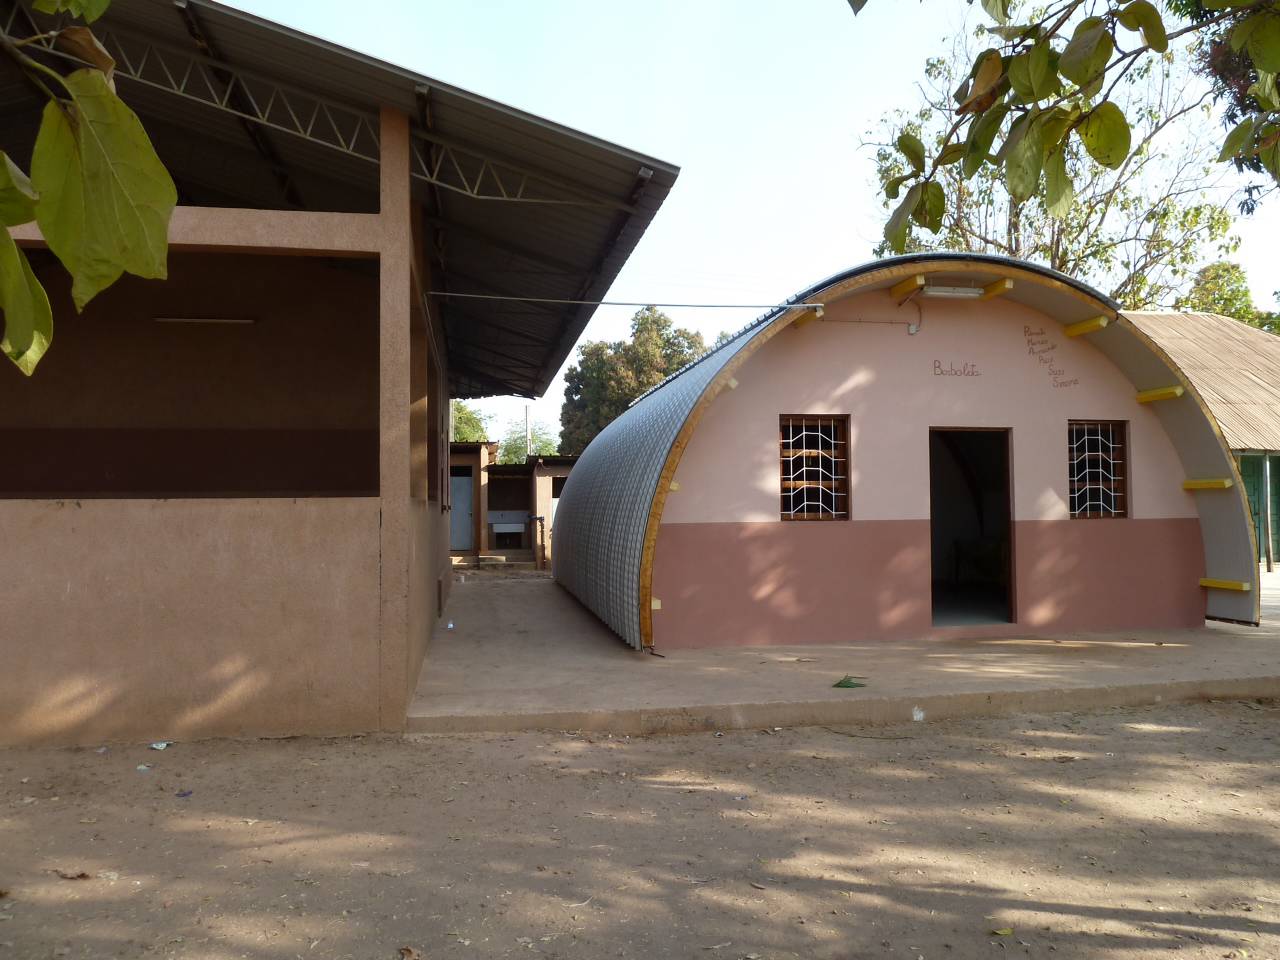 Infermeria Borboleta in Guinea Bissau